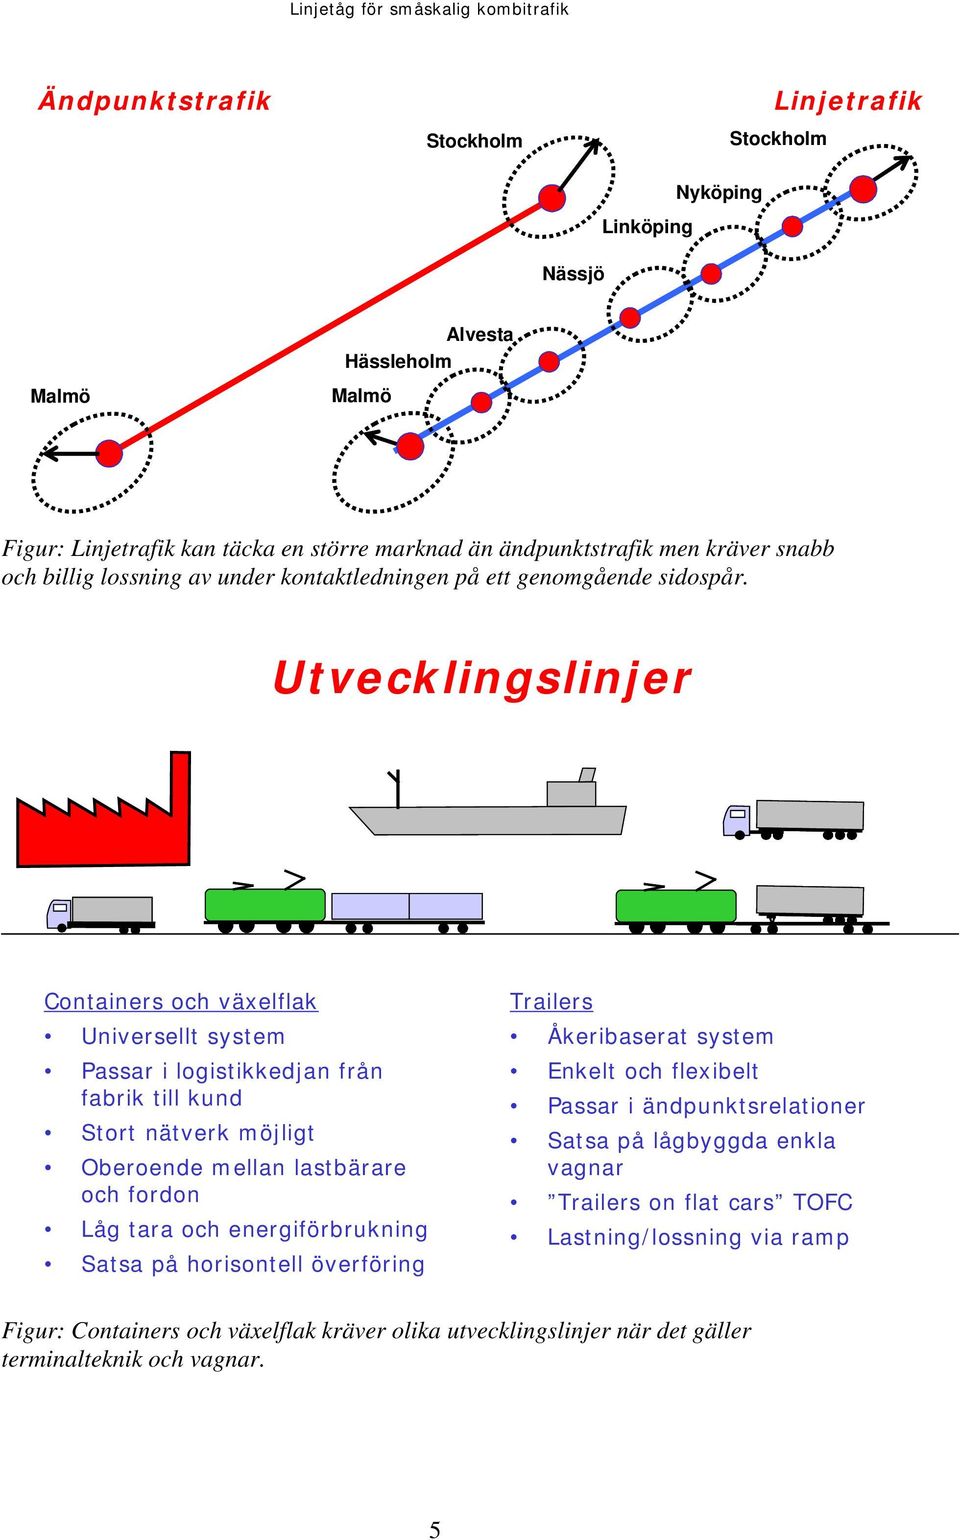 Utvecklingslinjer v Containers och växelflak Universellt system Passar i logistikkedjan från fabrik till kund Stort nätverk möjligt Oberoende mellan lastbärare och fordon Låg tara och